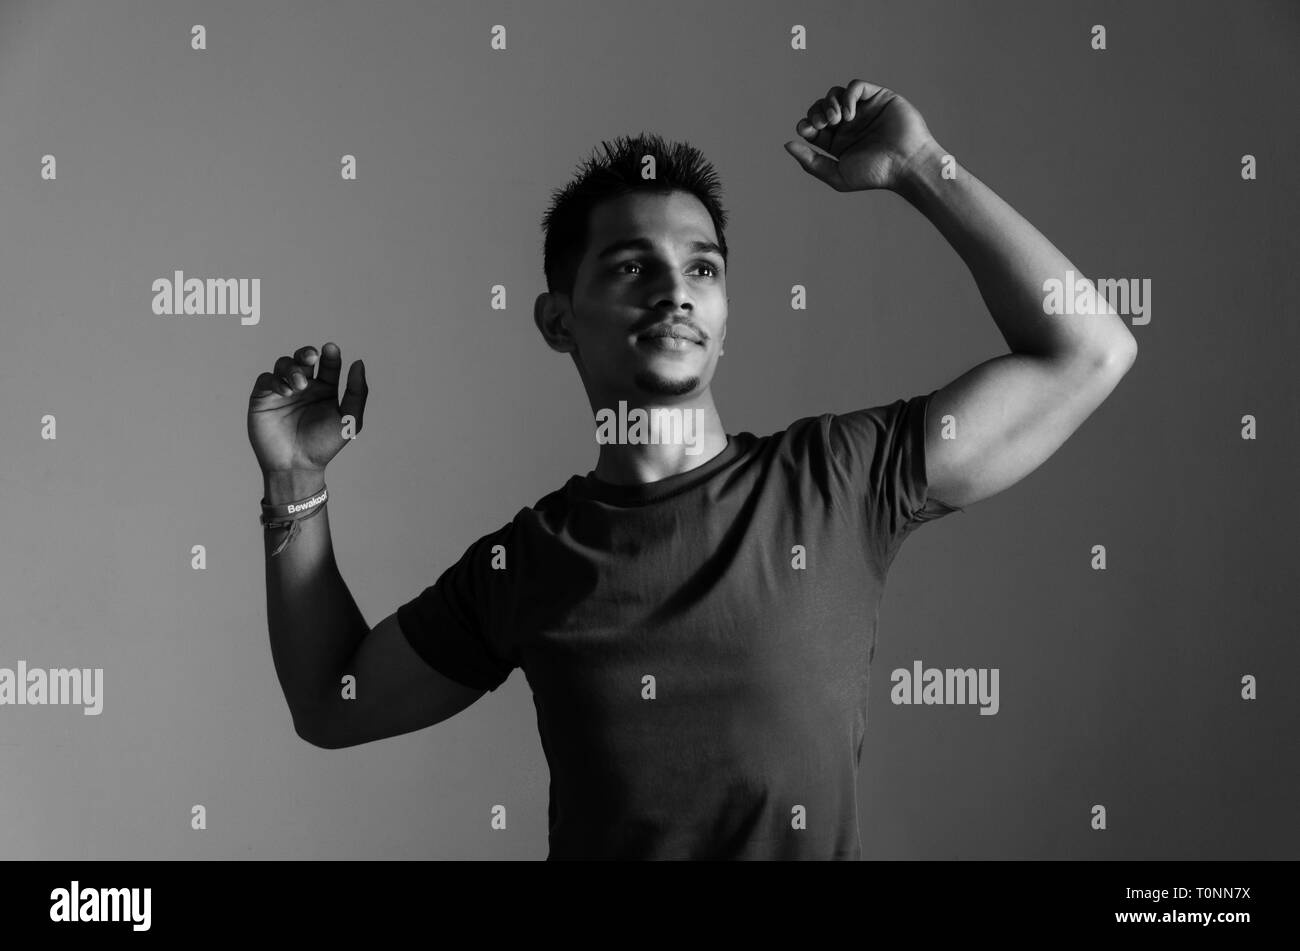 Le noir et blanc, portrait d'un jeune Indien de 22 ans montrant les mains tout en vous relaxant musculaire et à l'écart de caméra sur un arrière-plan uni, blanc. Banque D'Images